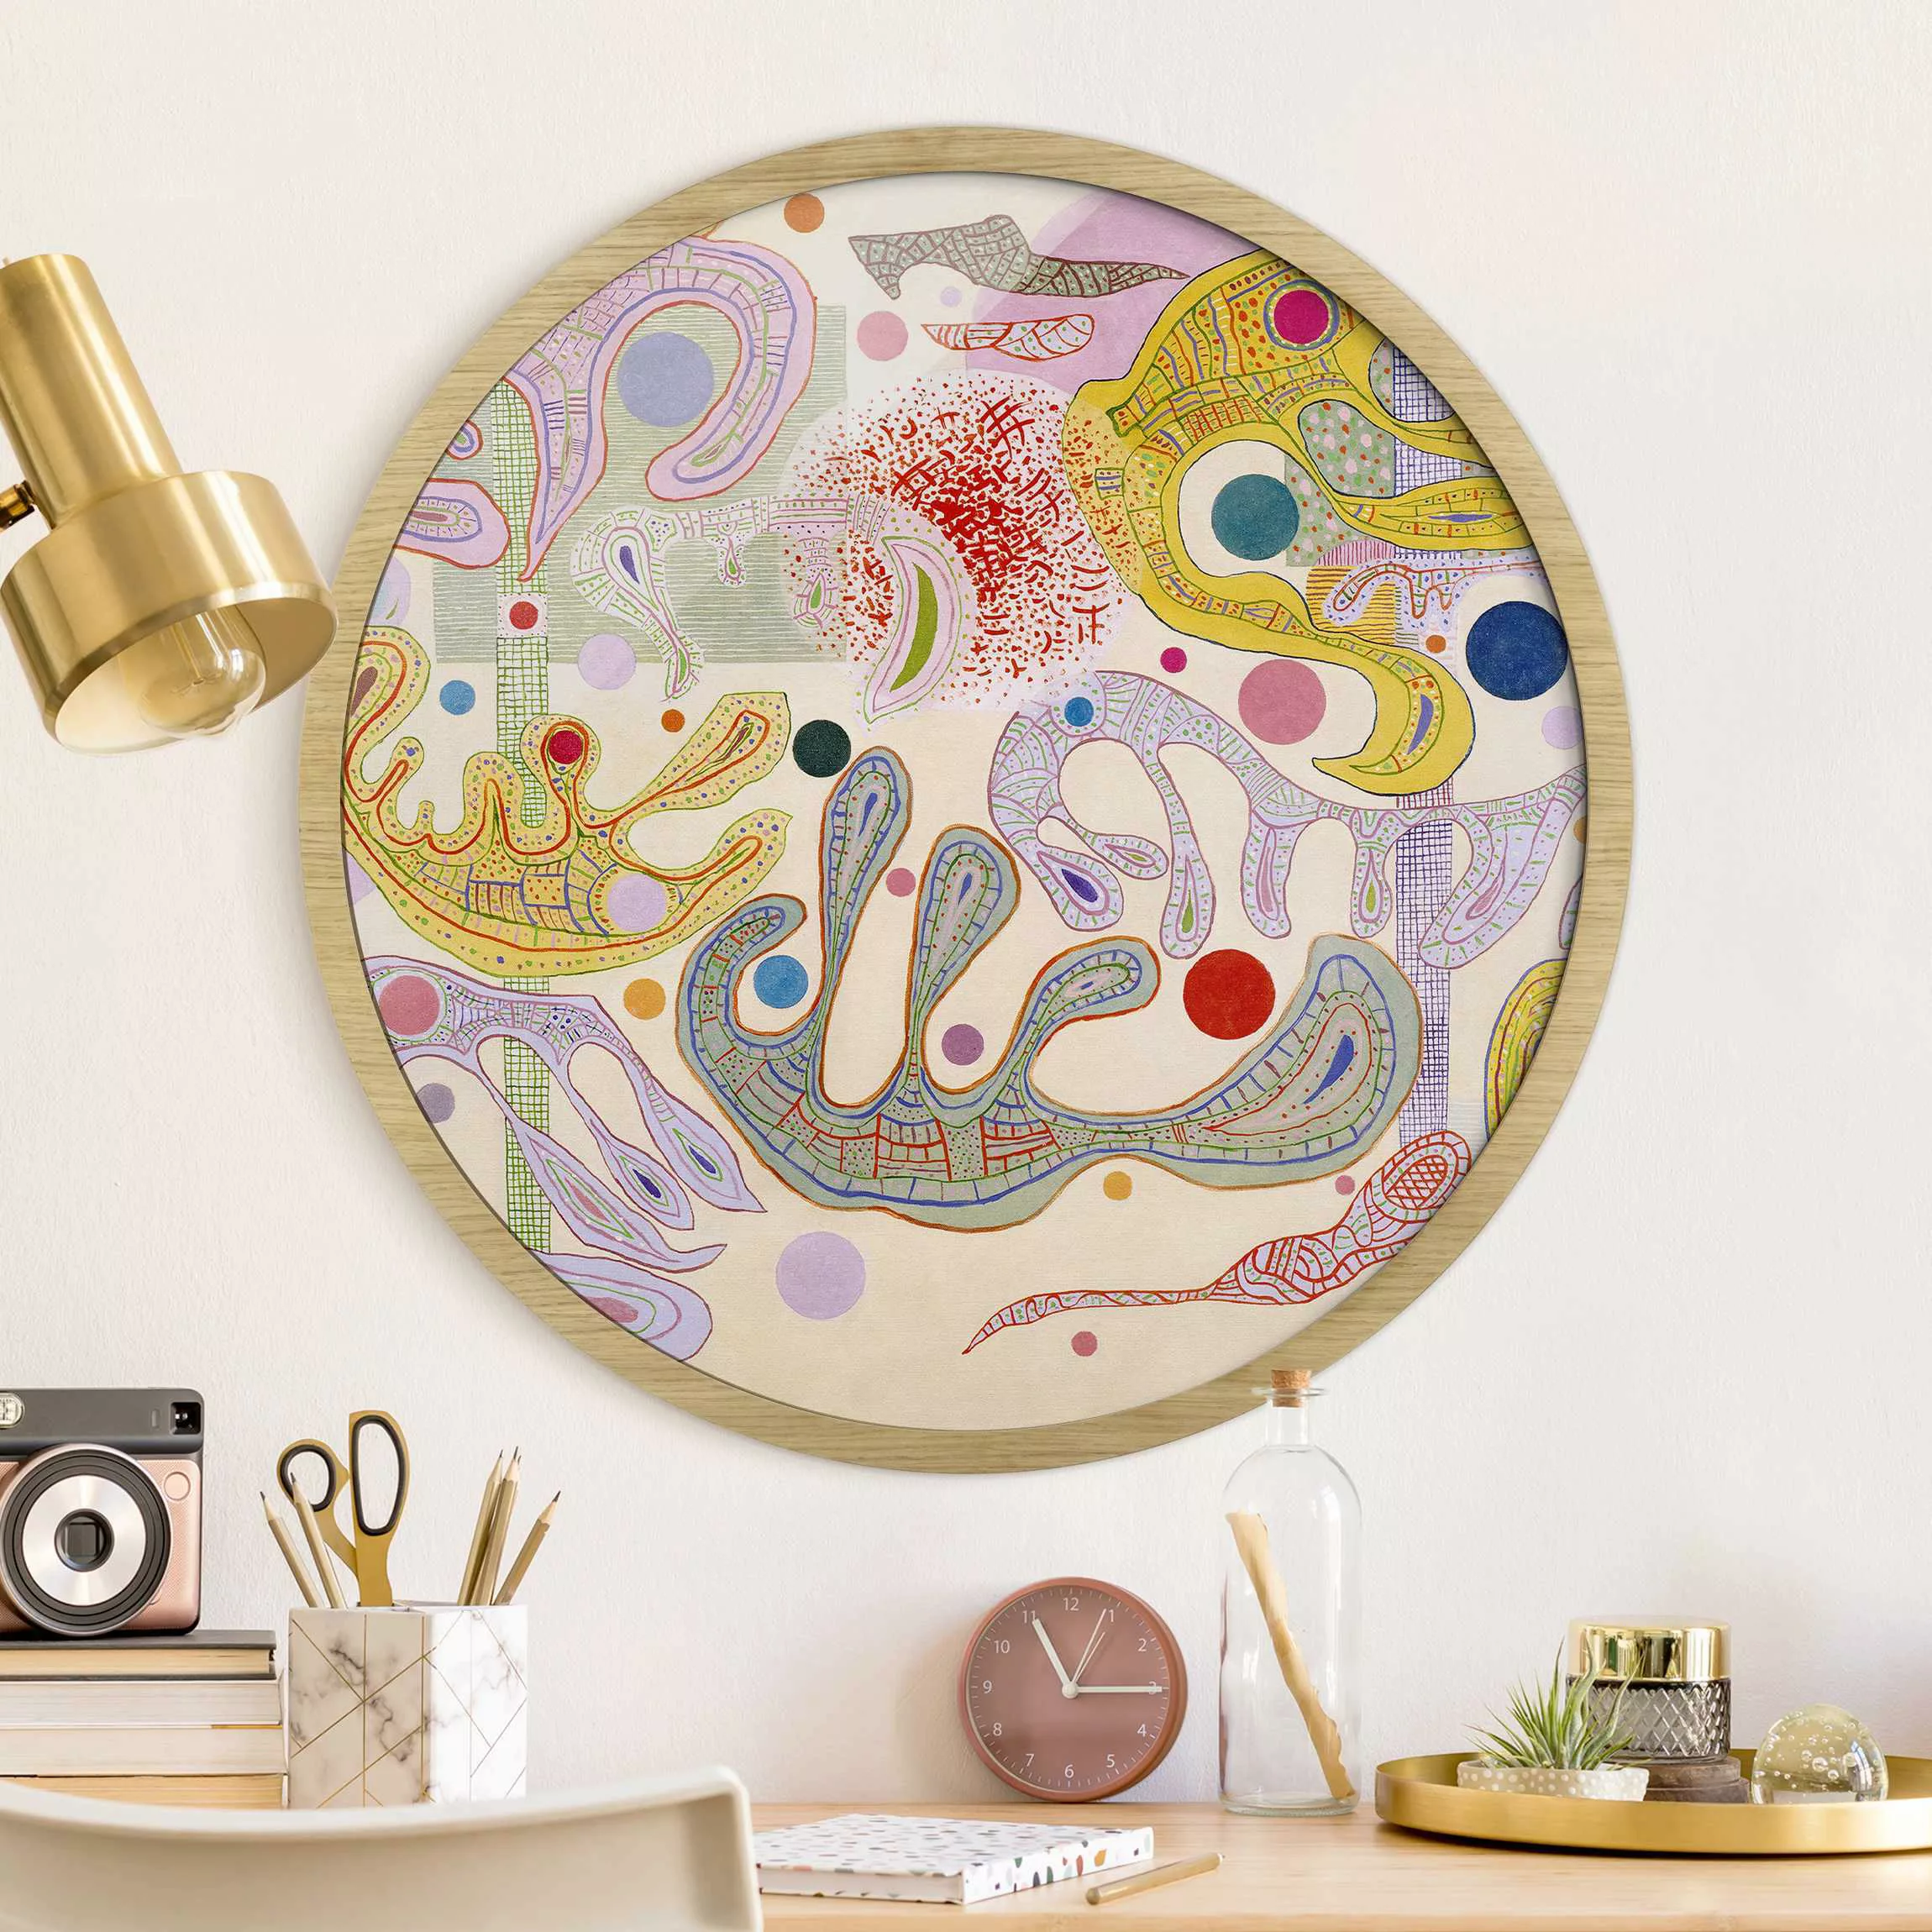 Rundes Gerahmtes Bild Wassily Kandinsky - Launische Formen günstig online kaufen